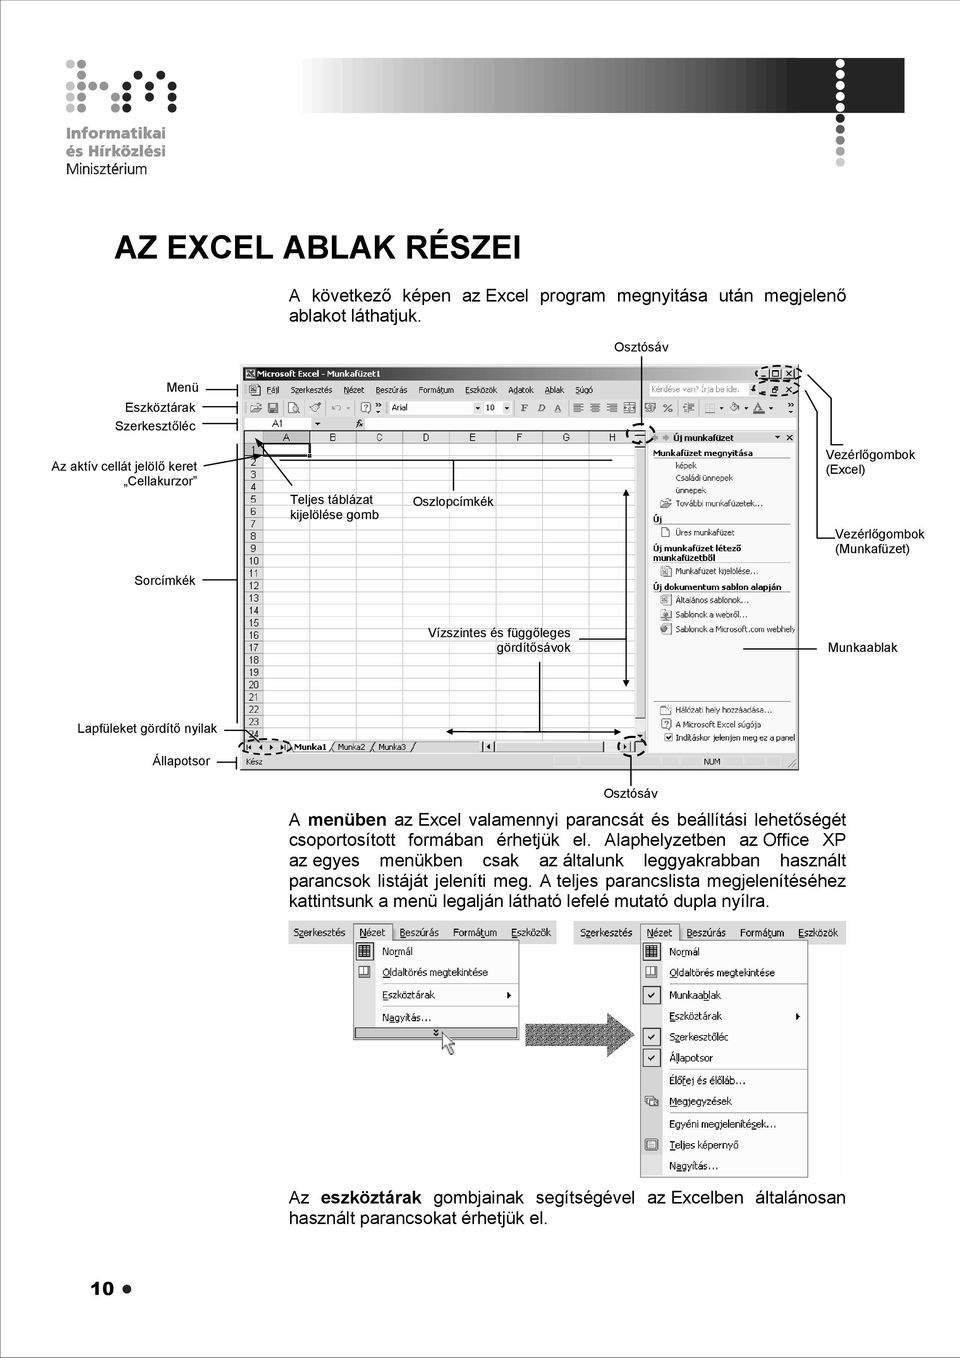 függőleges gördítősávok Munkaablak Lapfüleket gördítő nyilak Állapotsor Osztósáv A menüben az Excel valamennyi parancsát és beállítási lehetőségét csoportosított formában érhetjük el.